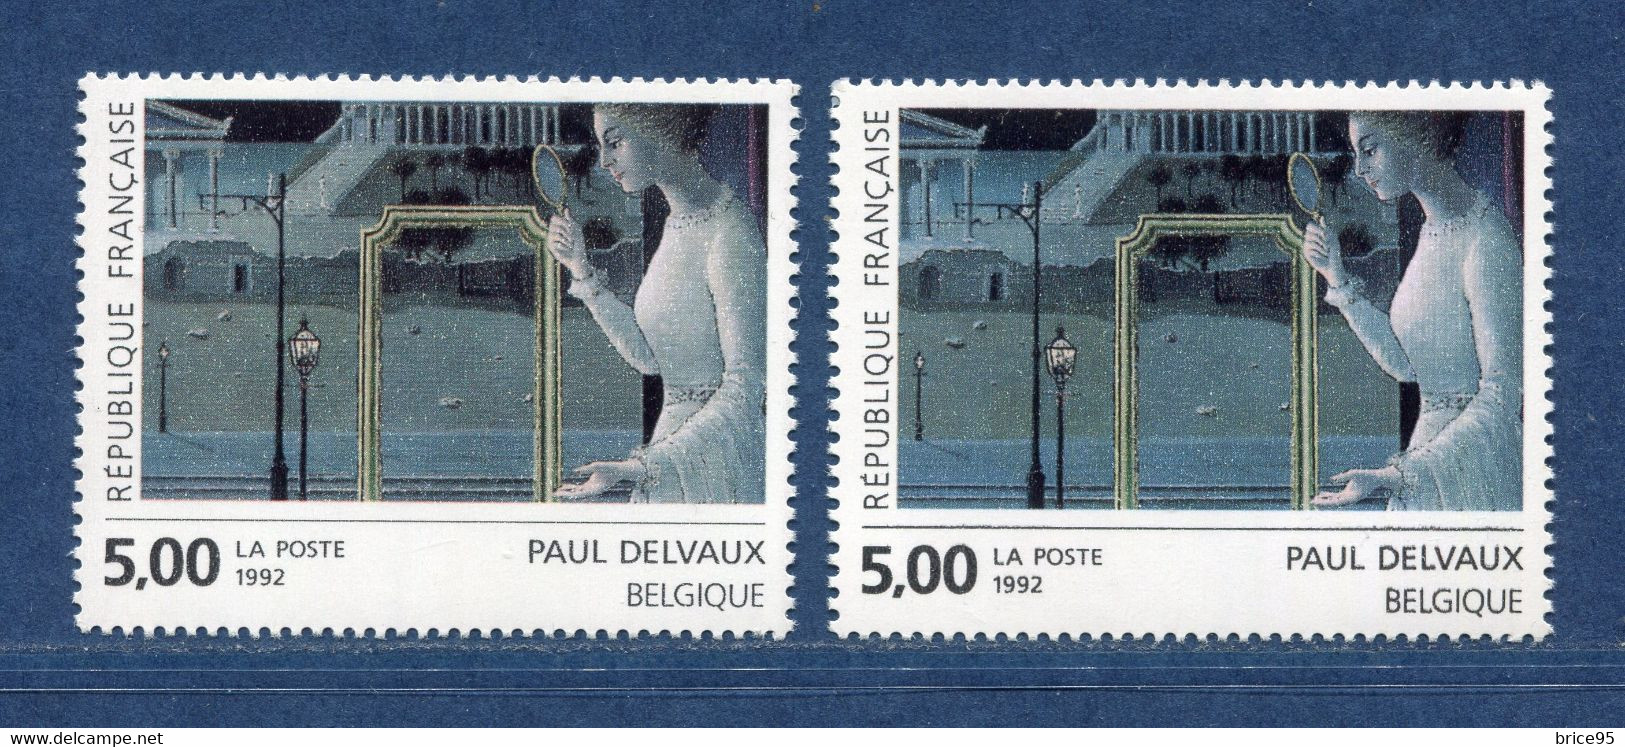 ⭐ France - Variété - YT N° 2781 - Couleurs - Pétouilles - Neuf Sans Charnière - 1992 ⭐ - Neufs